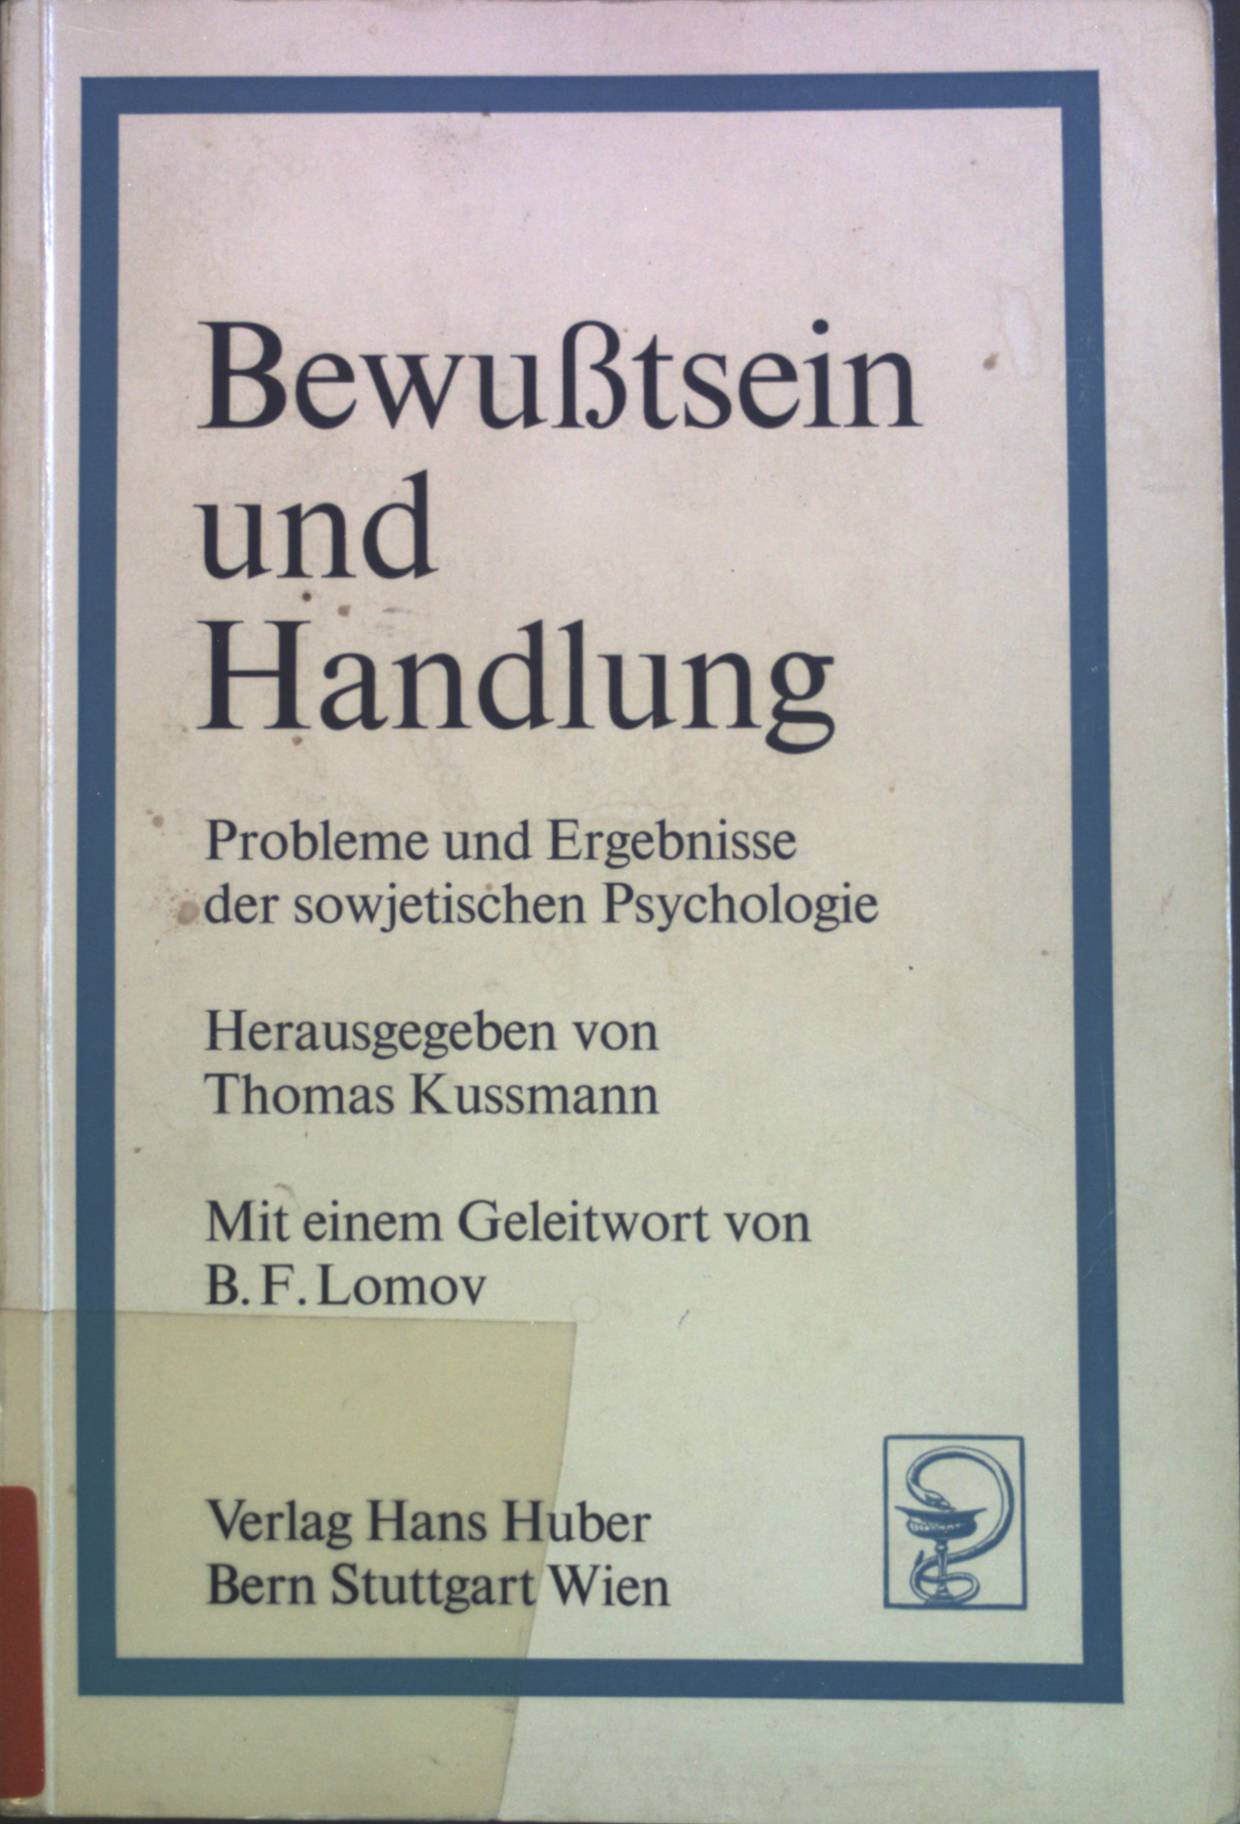 Bewusstsein und Handlung : Probleme und Ergebnisse der sowjetischen Psychologie. - Kussmann, Thomas und B. F. Lomov